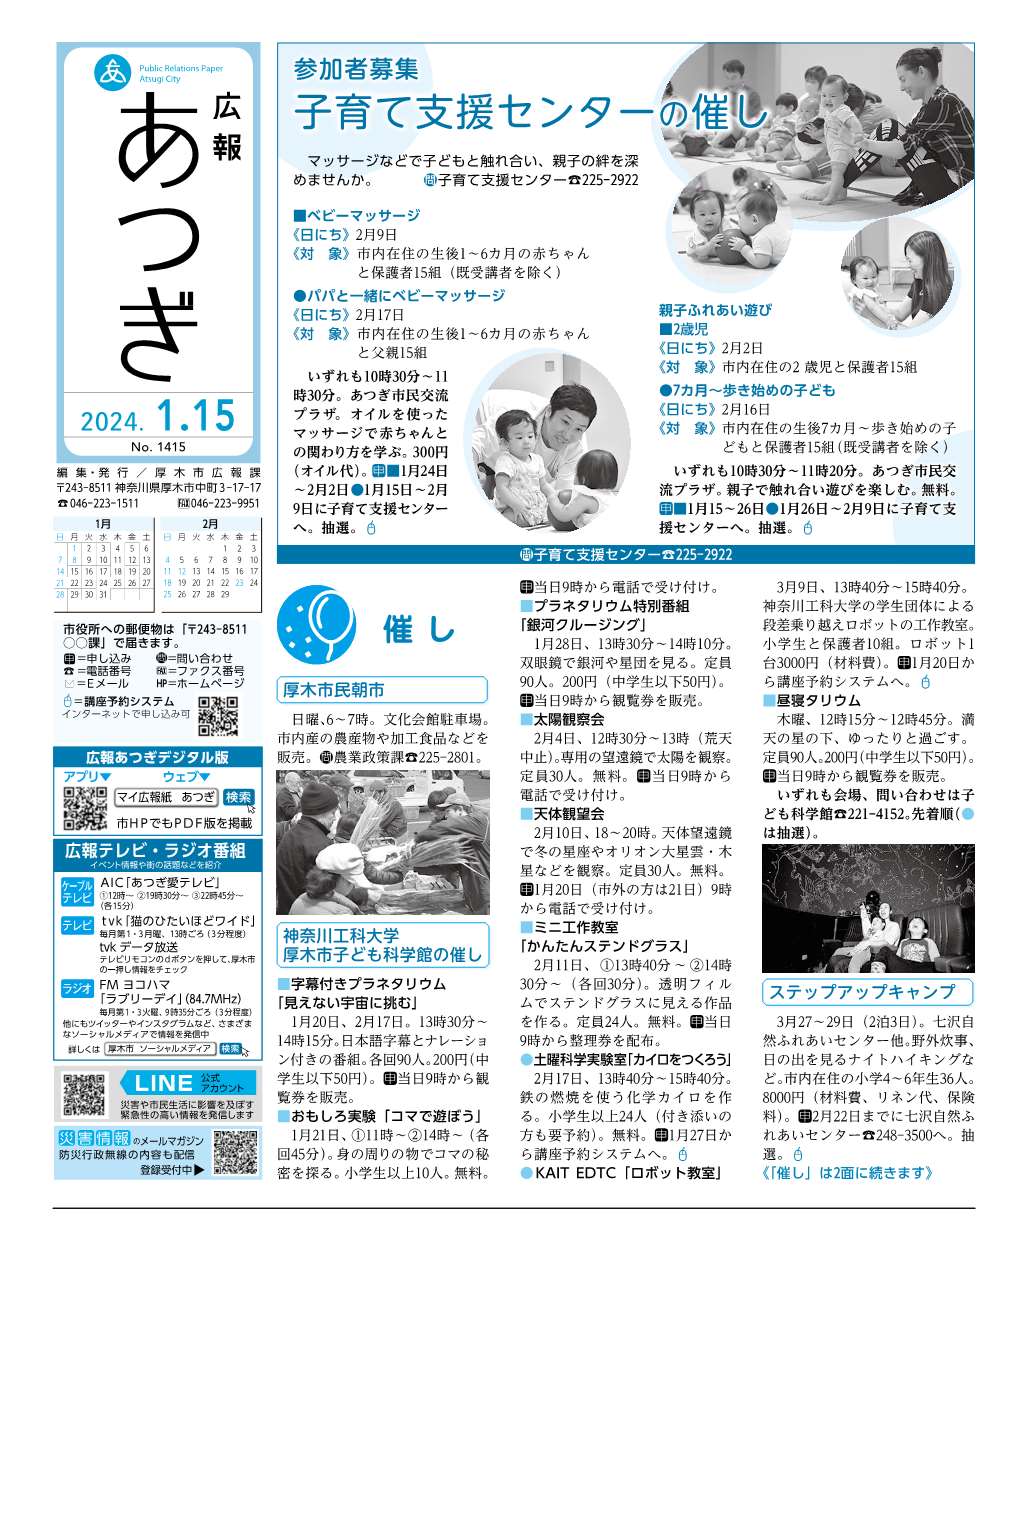 広報あつぎ1月15日号の1面のイメージ画像